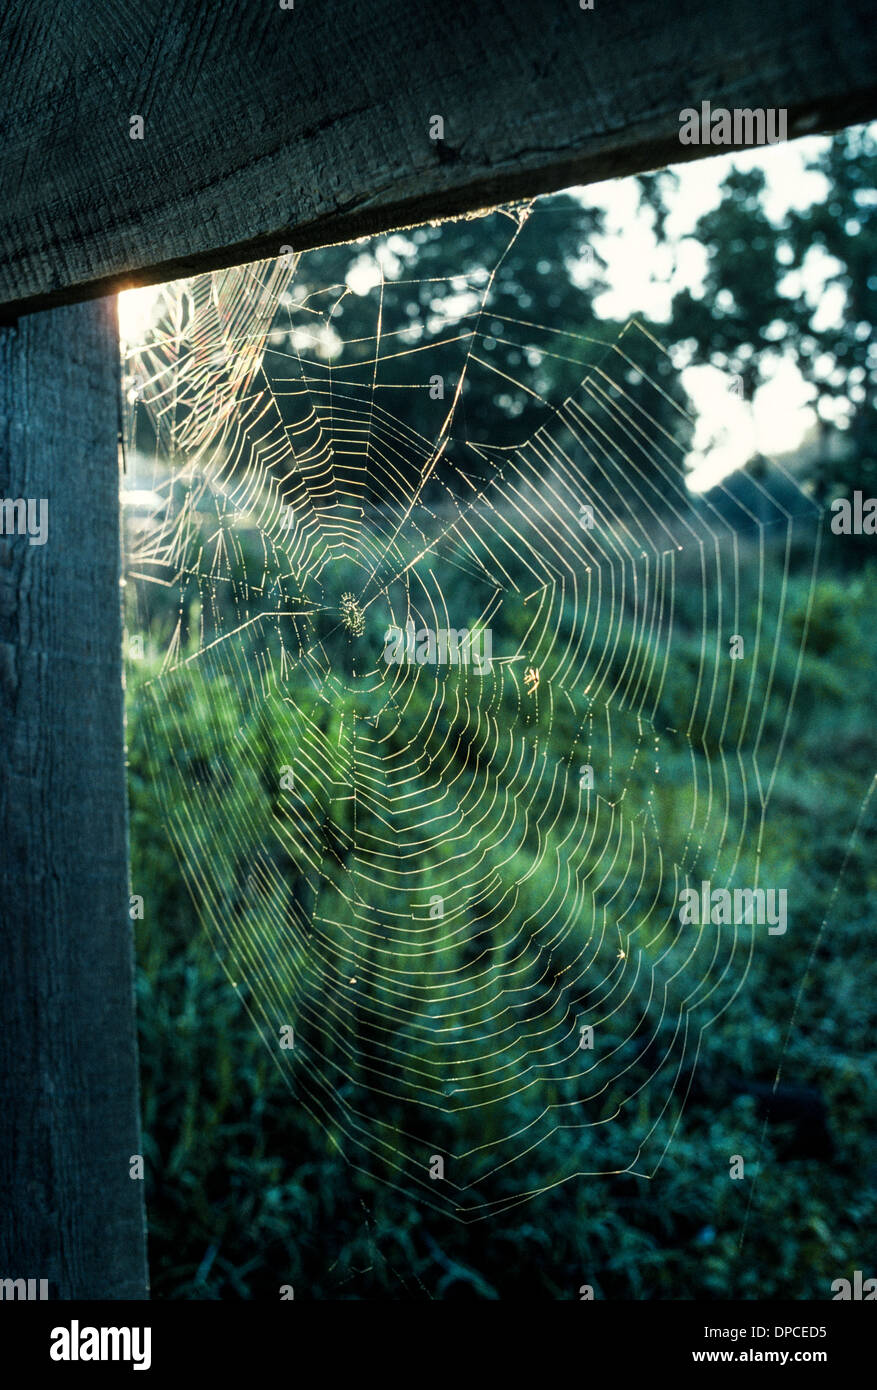 Die untergehende Sonne beleuchtet die Spiralen von einem komplizierten Spinnennetz gesponnen um zu fangen Insekten um die Spinne zu ernähren, die die Falle im ländlichen Florida/USA gebaut. Stockfoto